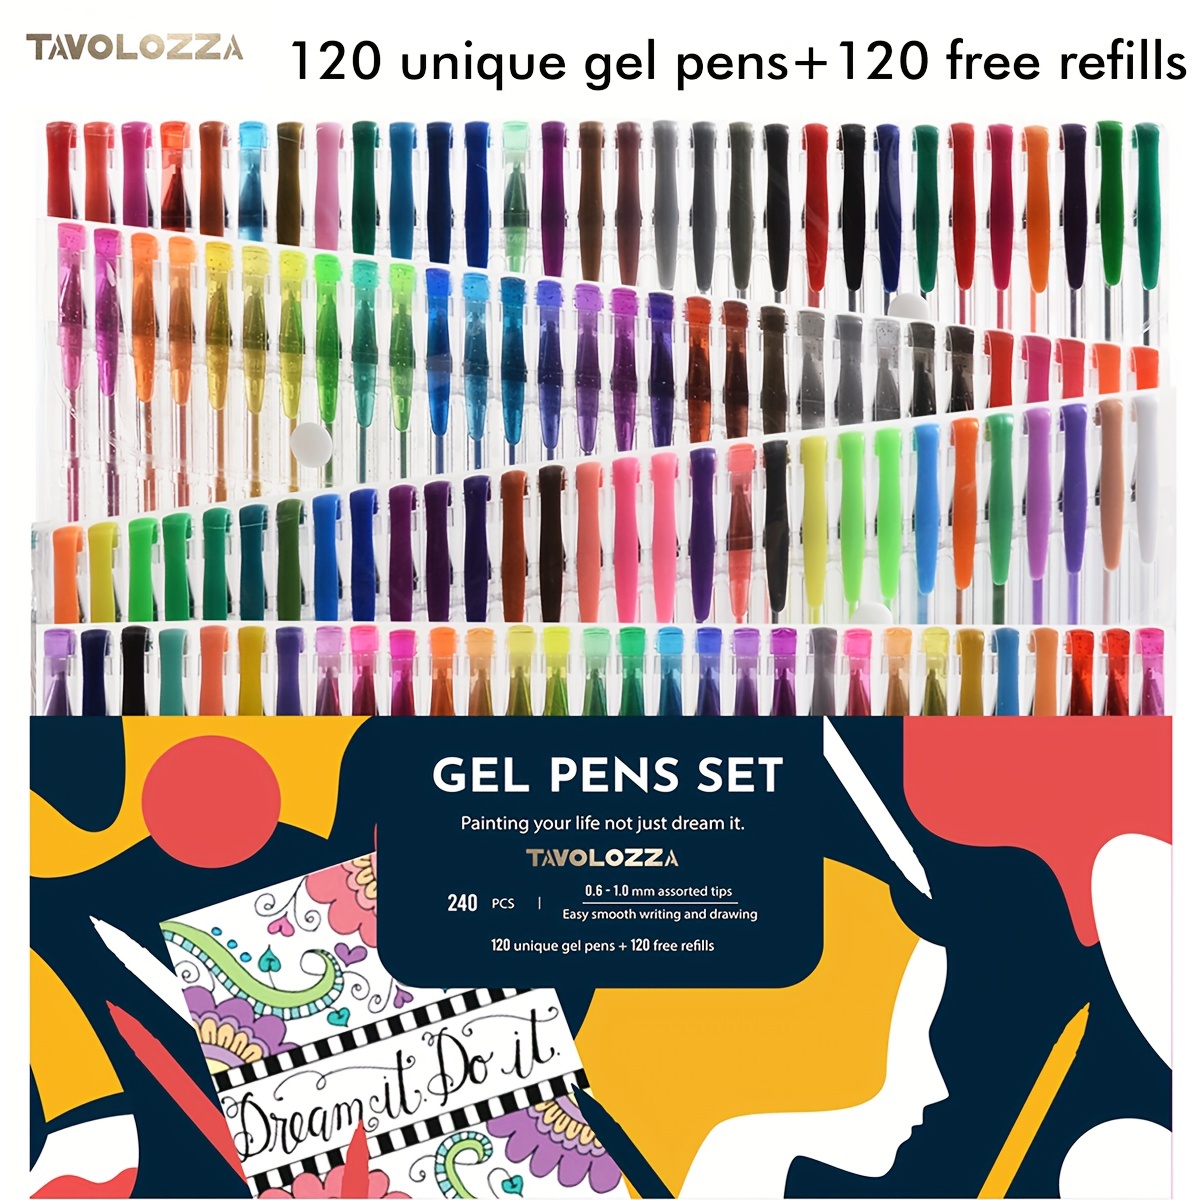 Gel Pen Kit